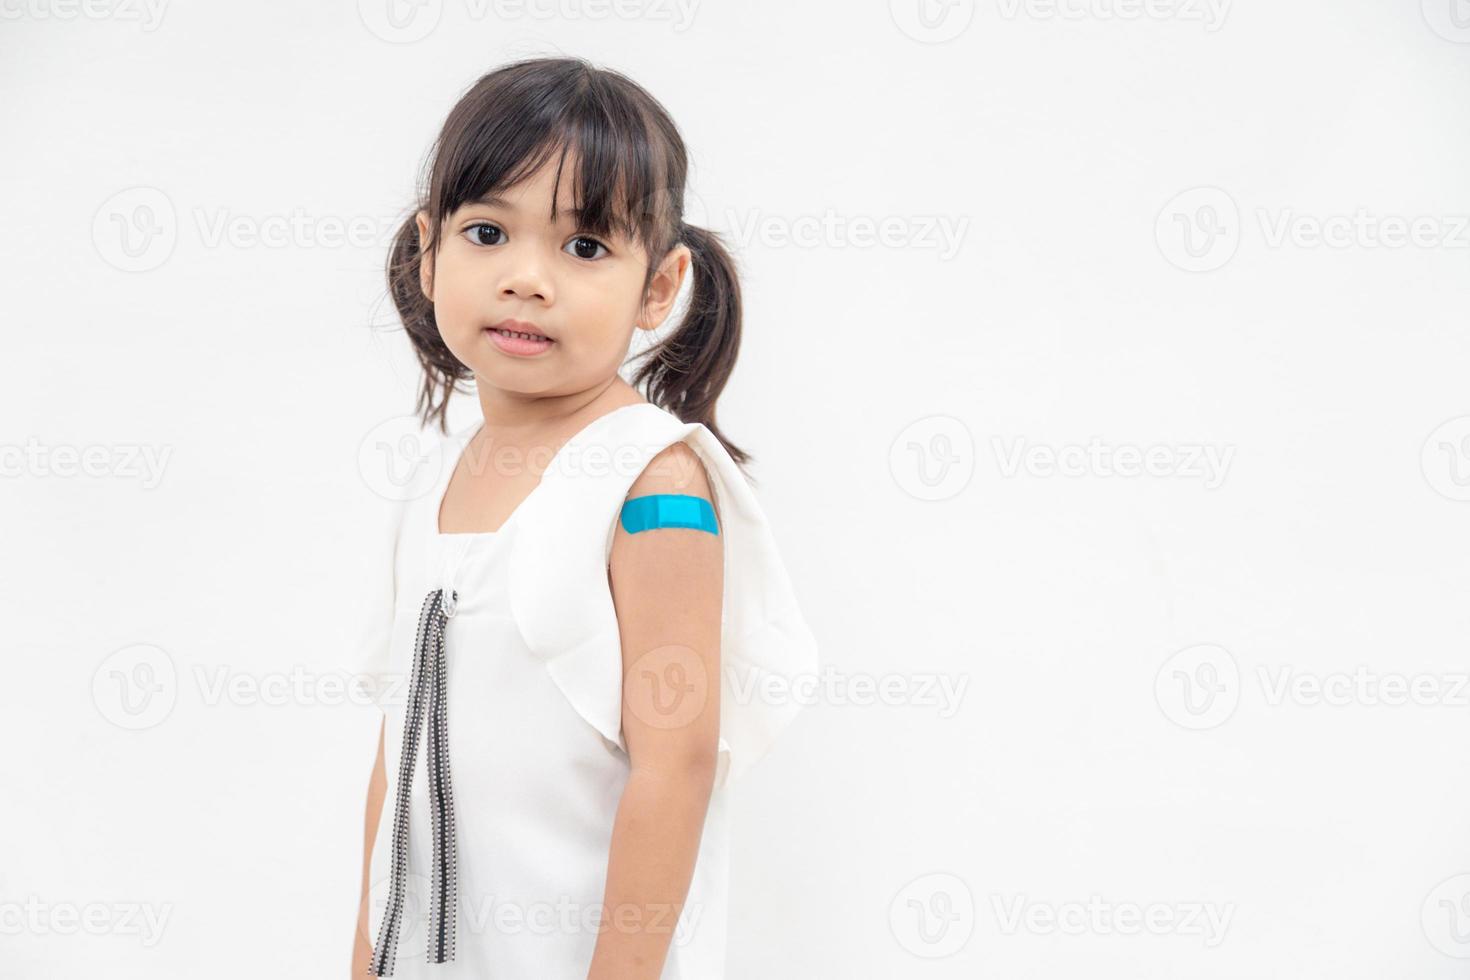 Aziatisch weinig meisje tonen zijn arm na kreeg gevaccineerd of inenting, kind immunisatie, covid delta vaccin concept foto